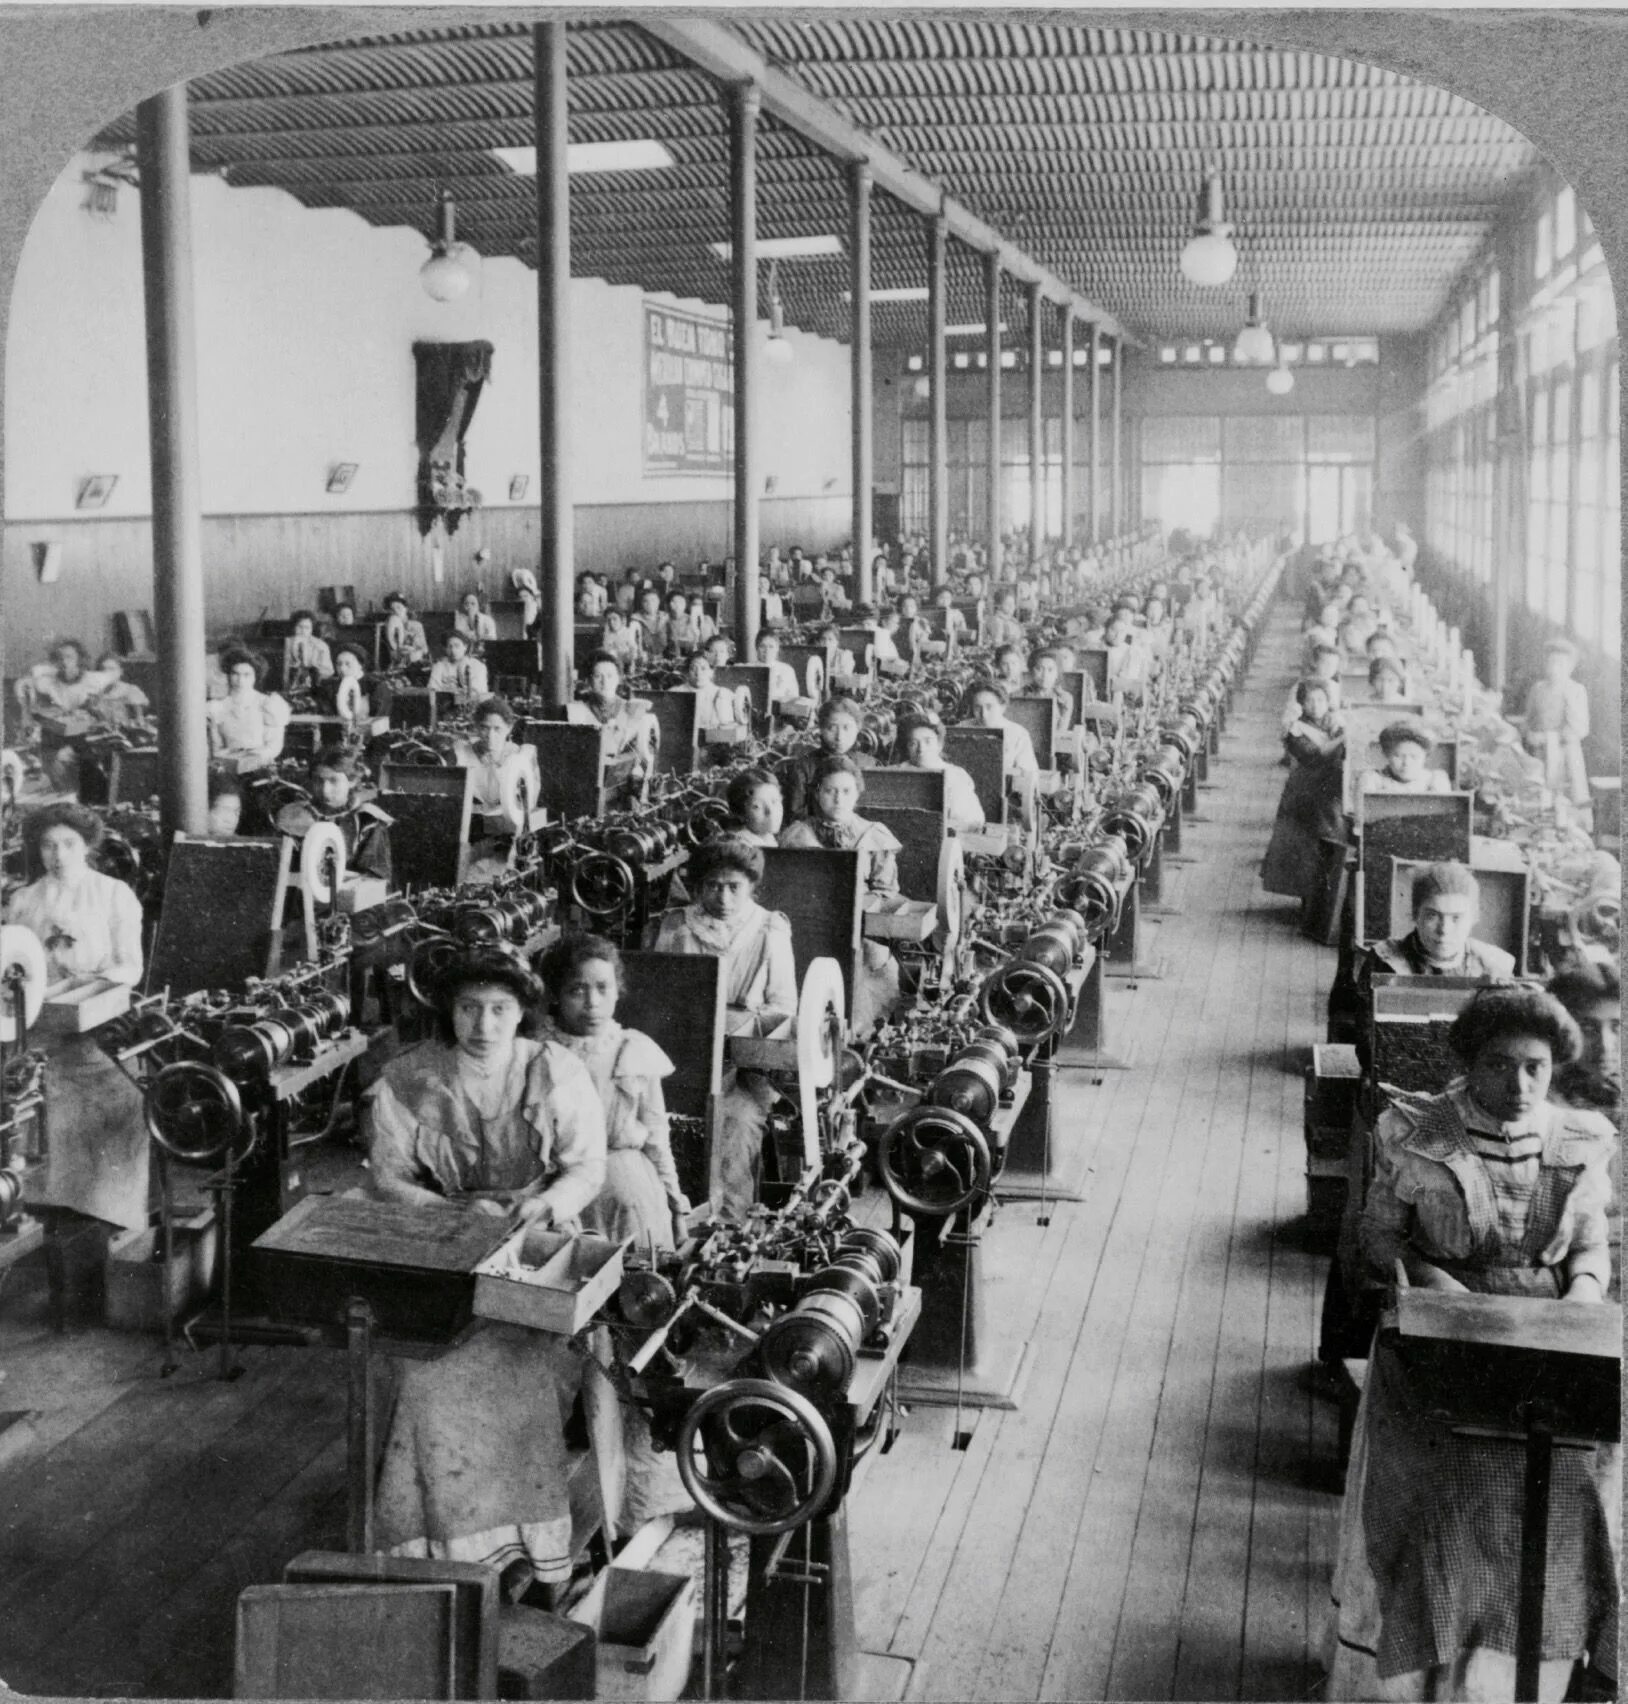 Табачная фабрика в Испании 19 век. Первая сигаретная фабрика в Лондоне 19 век. Табачная фабрика в 19 веке в России. Фабрика в начале 20 века в США. Фабрики 20 века